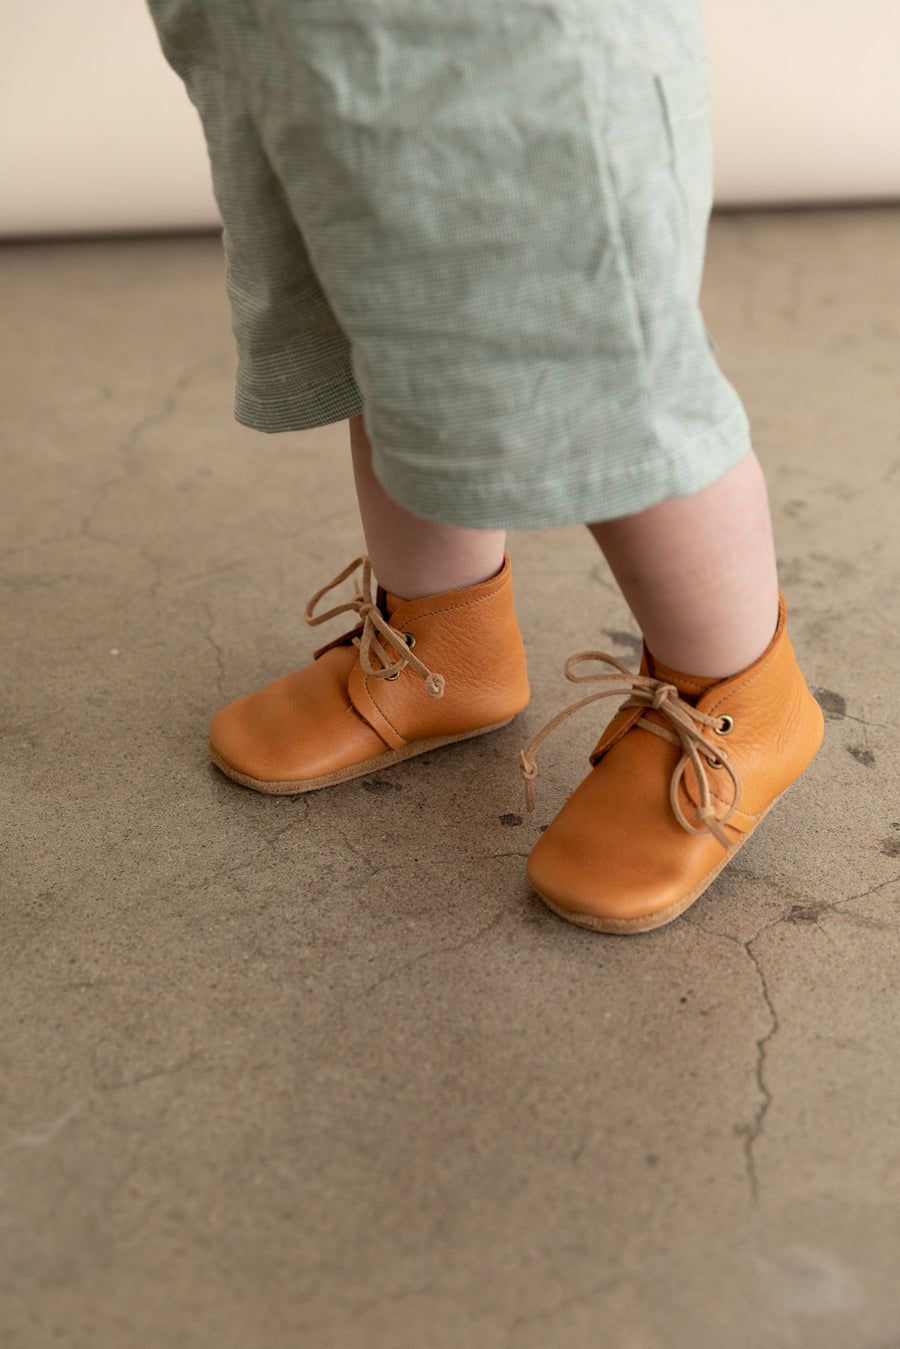 Baby Boots - Denim